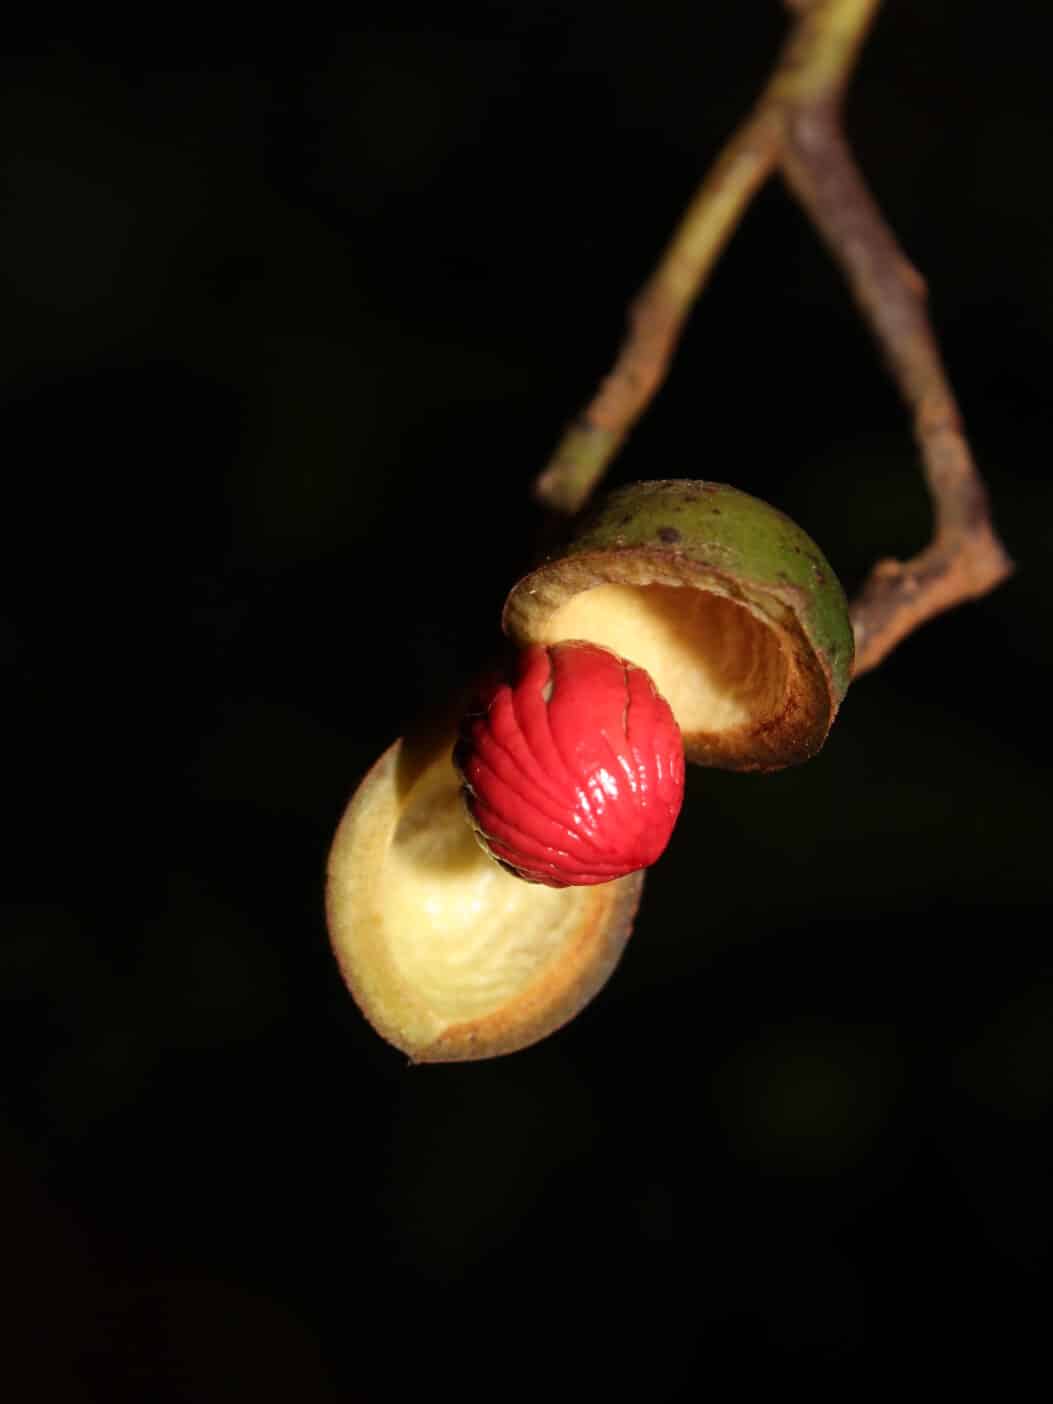 Ucuuba, Virola Surinamensis